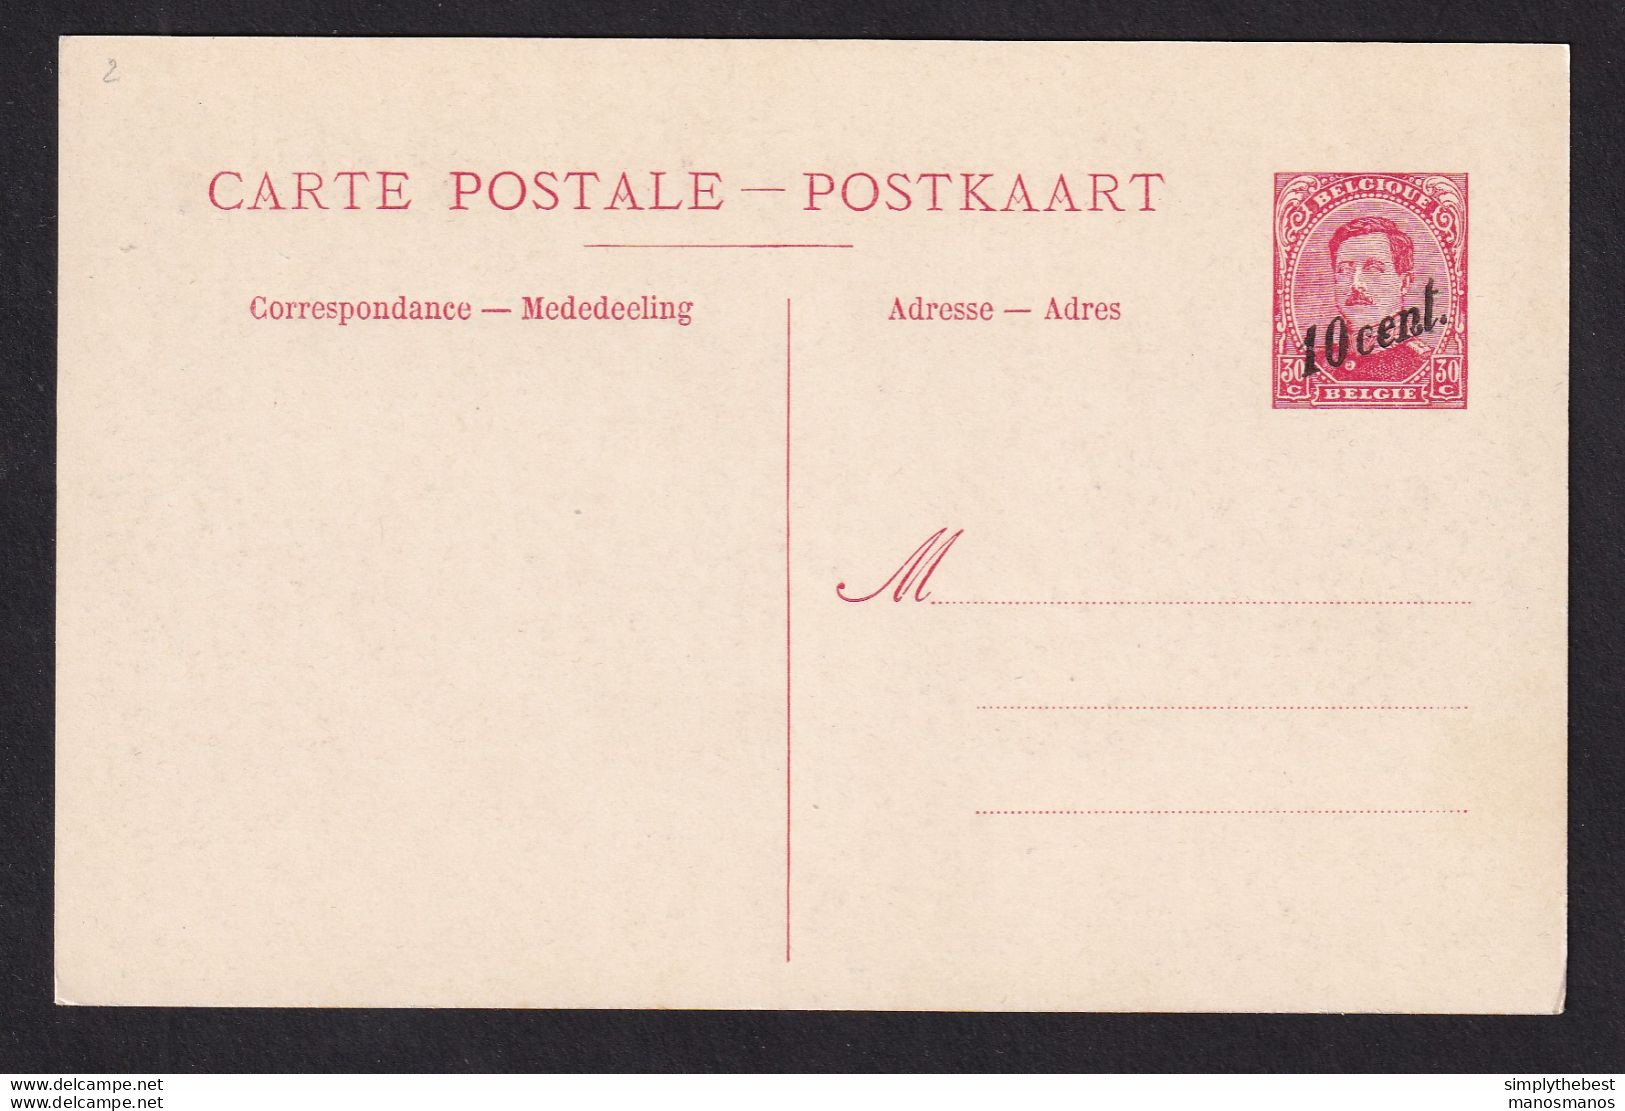 DDBB 437 - Carte Postale Paquebot 19 - 10 Cent. Sur 30 C - Non Utilisée - Cartes Paquebot